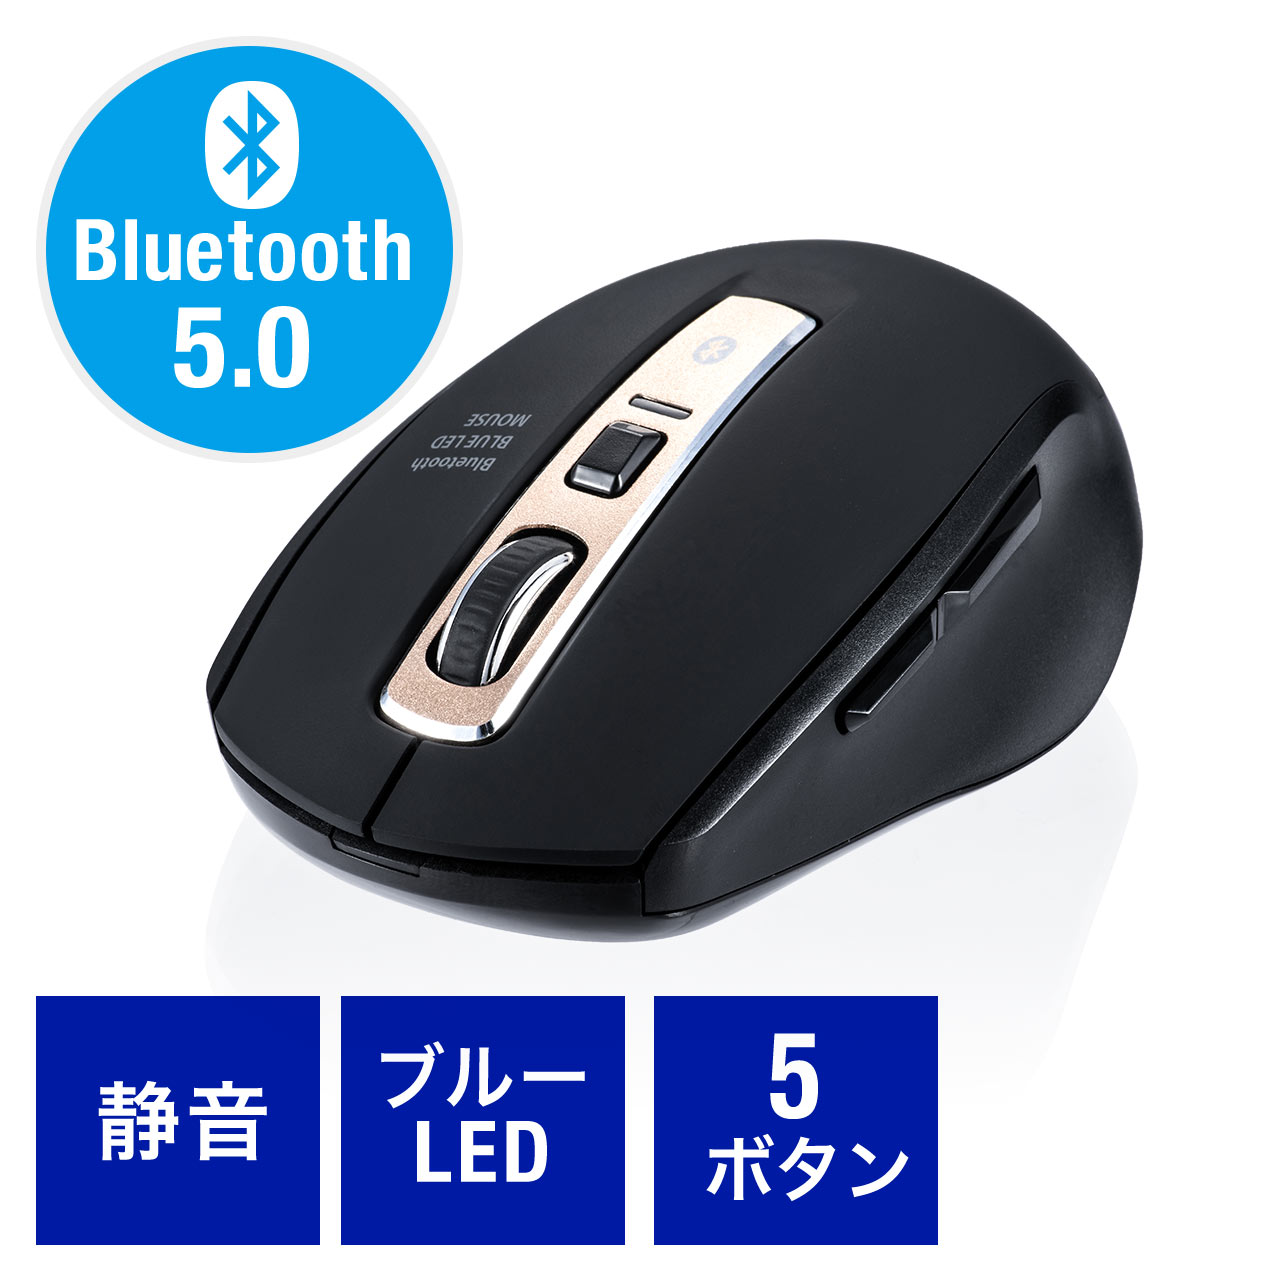 静音bluetoothマウス Bluetooth5 0 ブルーledセンサー 5ボタン カウント切り替え800 1200 1600 静音ボタン 400 Ma125bkの販売商品 通販ならサンワダイレクト